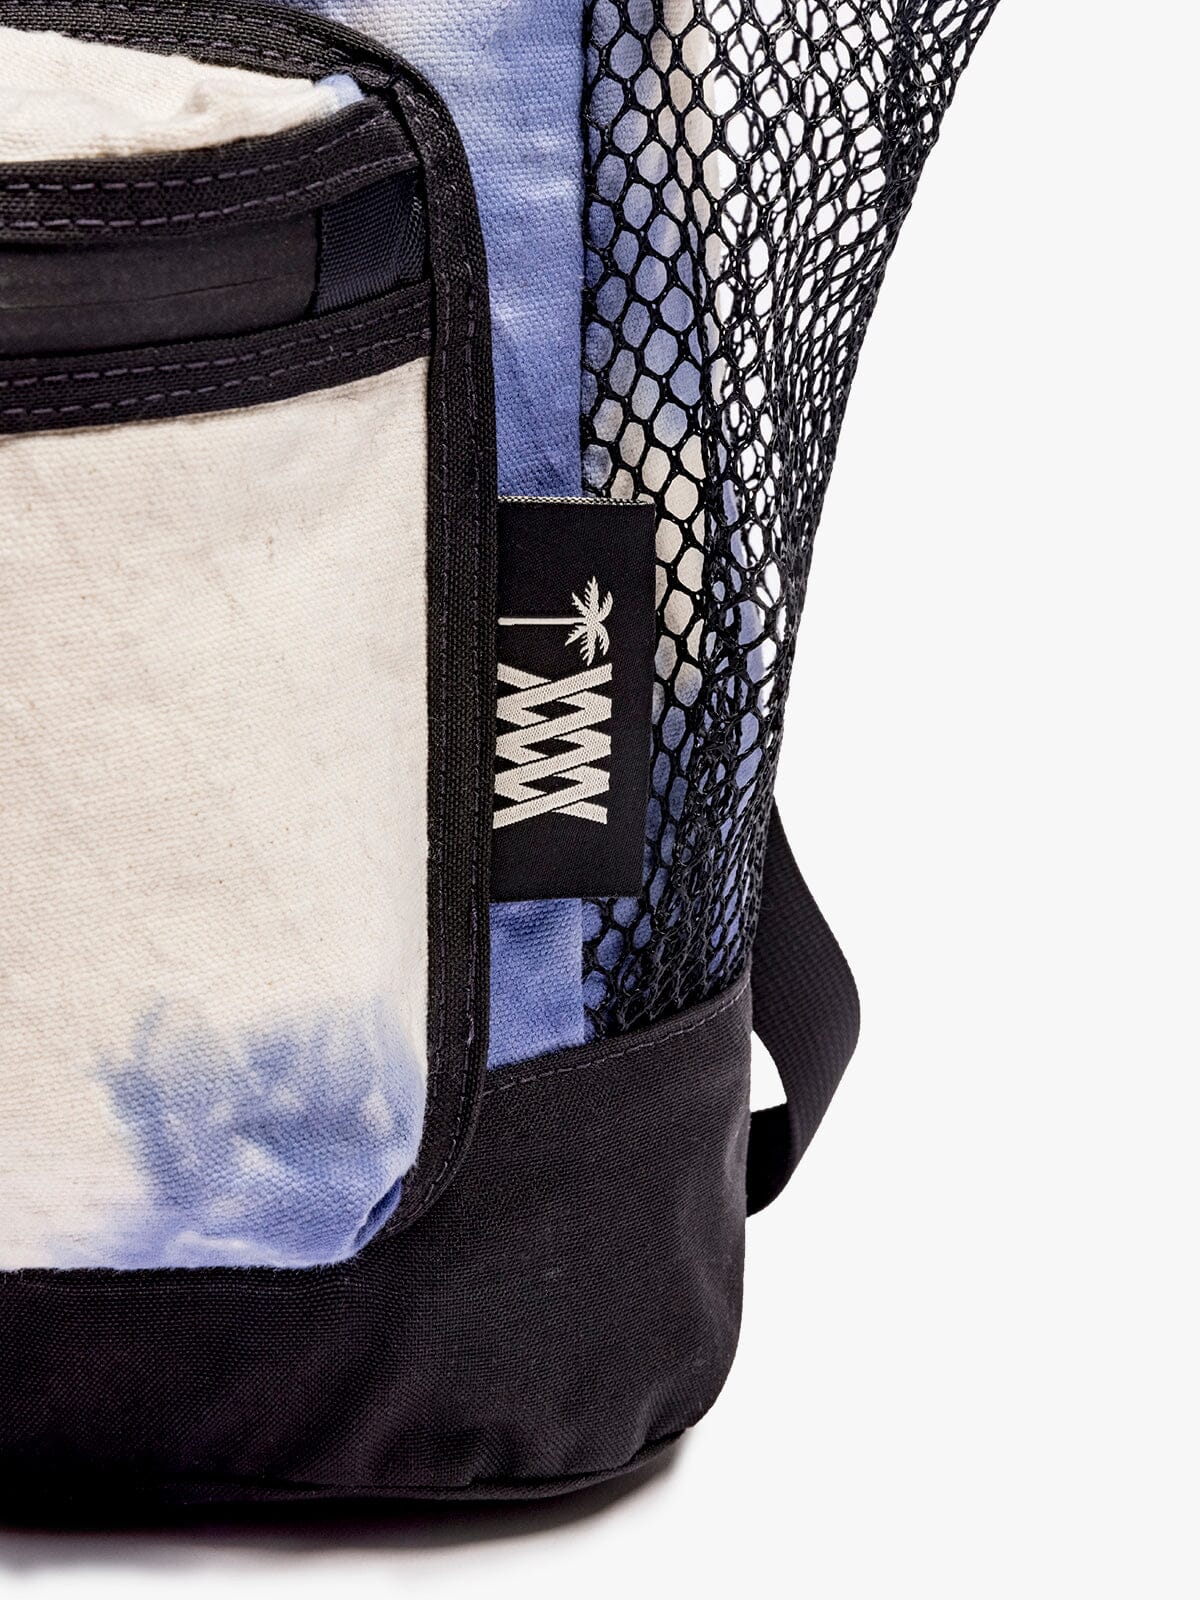 MW x ASP Stratus Ruck by Mission Workshop - Weatherproof Bags & Technical Apparel - San Francisco & Los Angeles - Construit pour durer - Garanti pour toujours